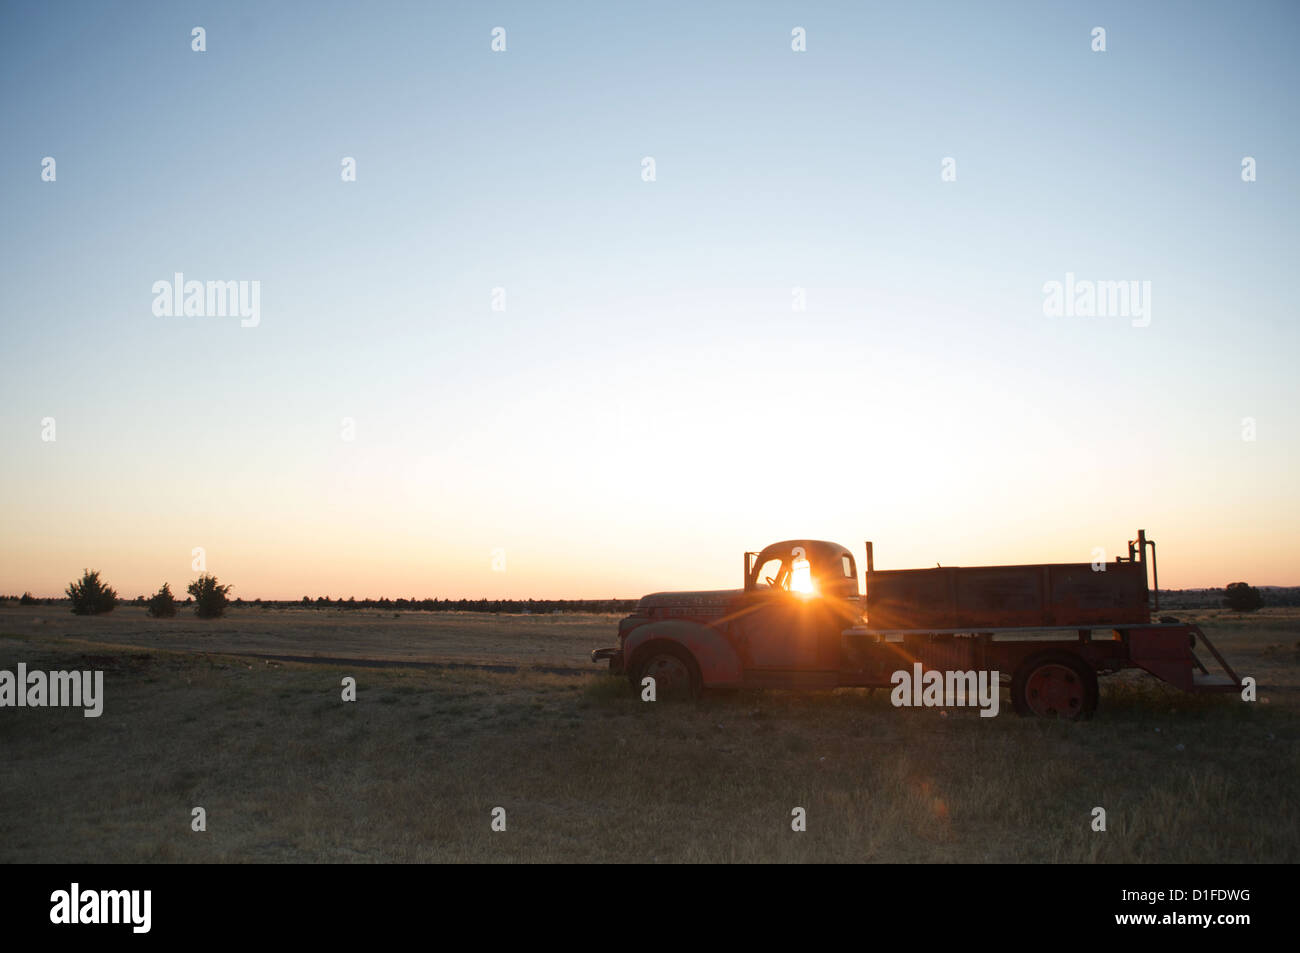 Les rayons de soleil à travers la vitre de l'ancien camion agricole au lever du soleil, Shaniko, Californie, États-Unis d'Amérique, Amérique du Nord Banque D'Images